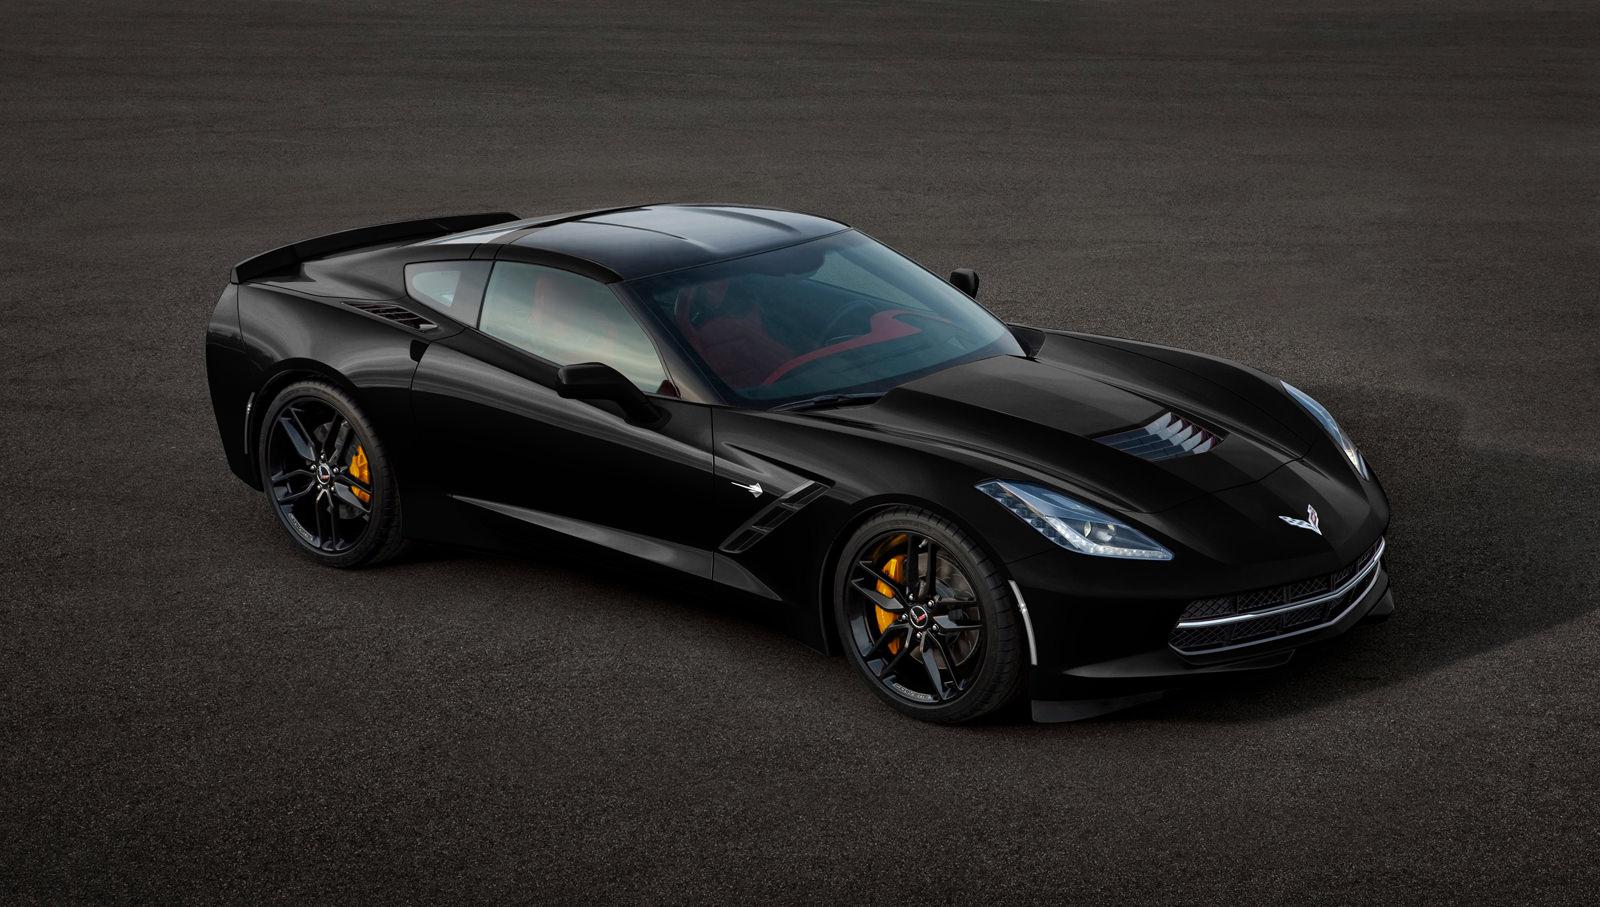 Black Corvette Wallpapers Top Những Hình Ảnh Đẹp